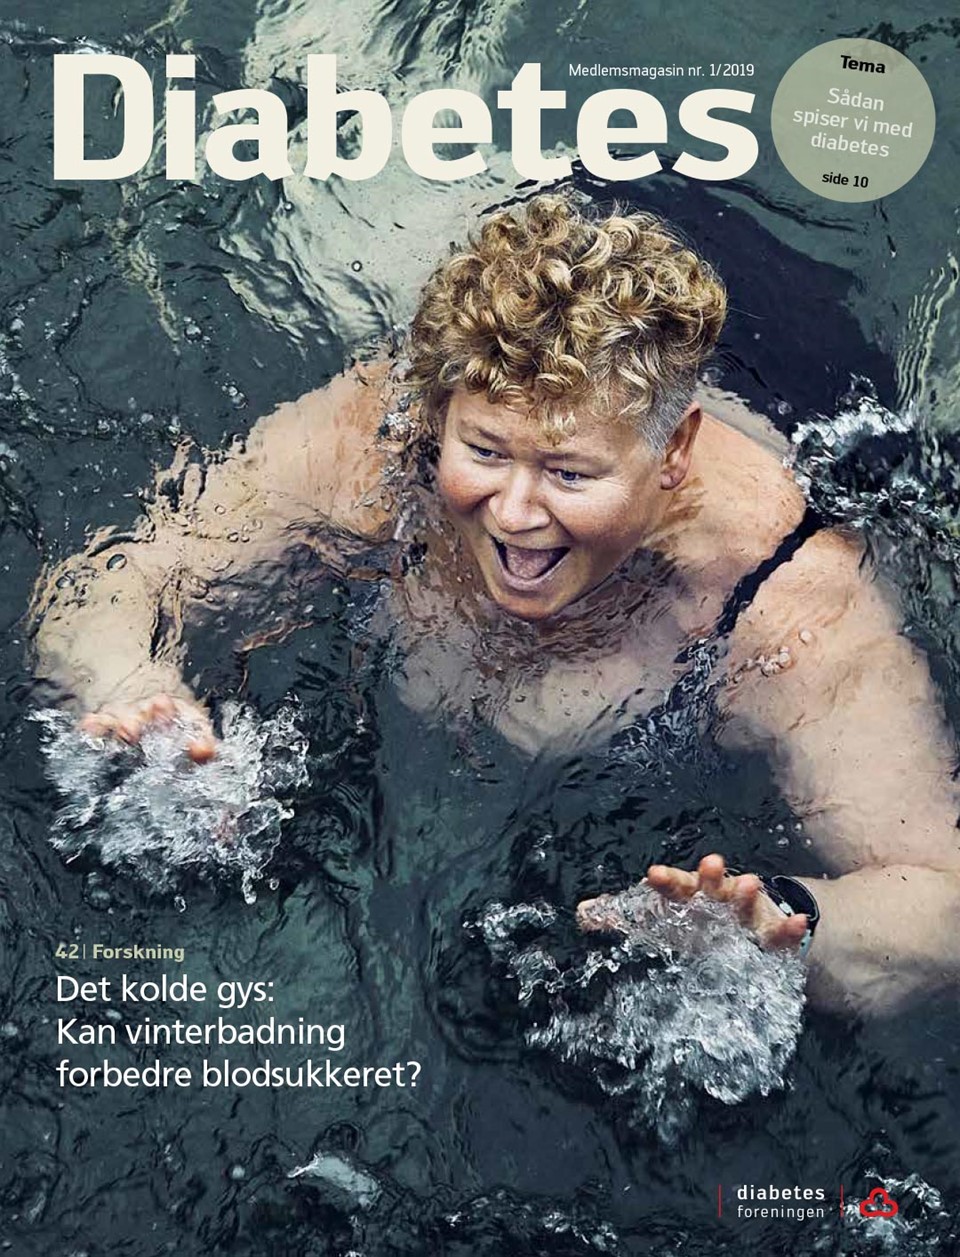  Forside af magasinet Diabetes marts 2019